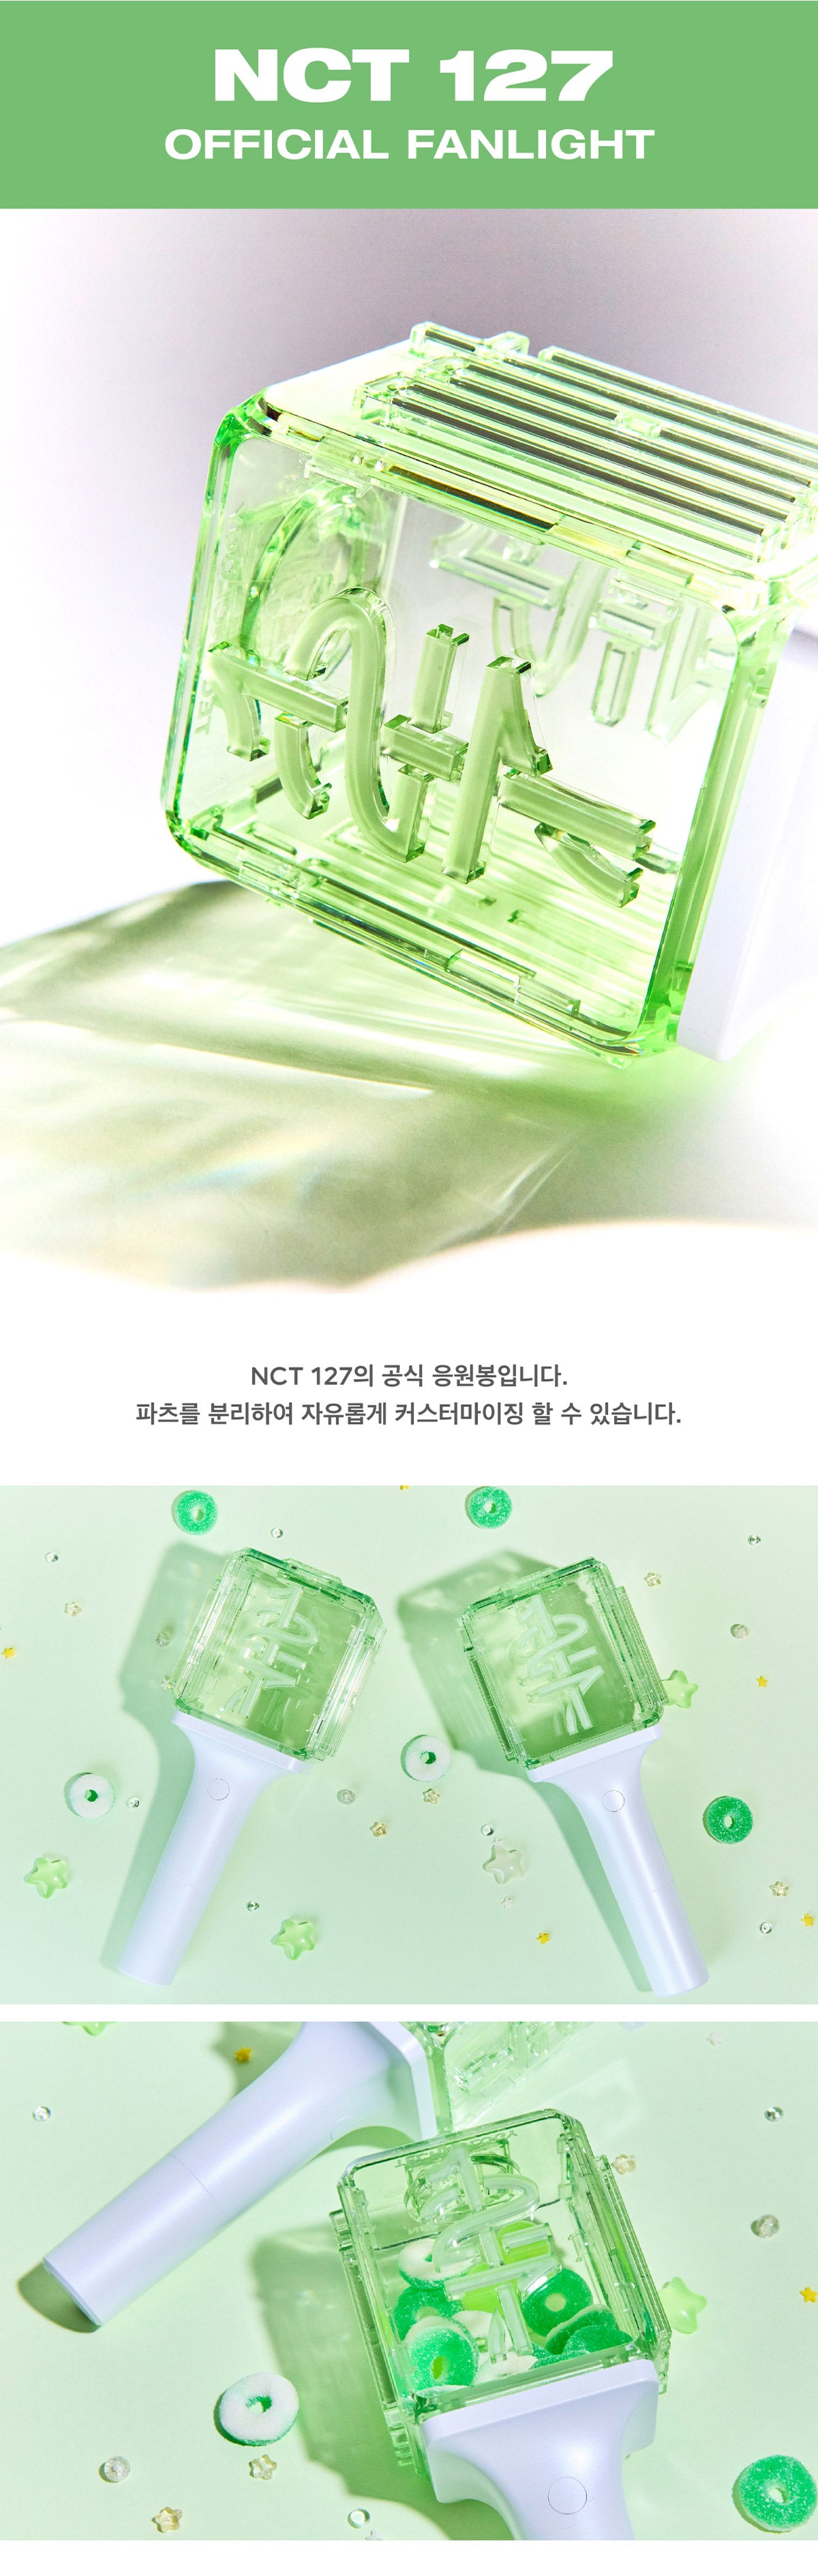 NCT 127 - Official Fanlight (Ver. 2)